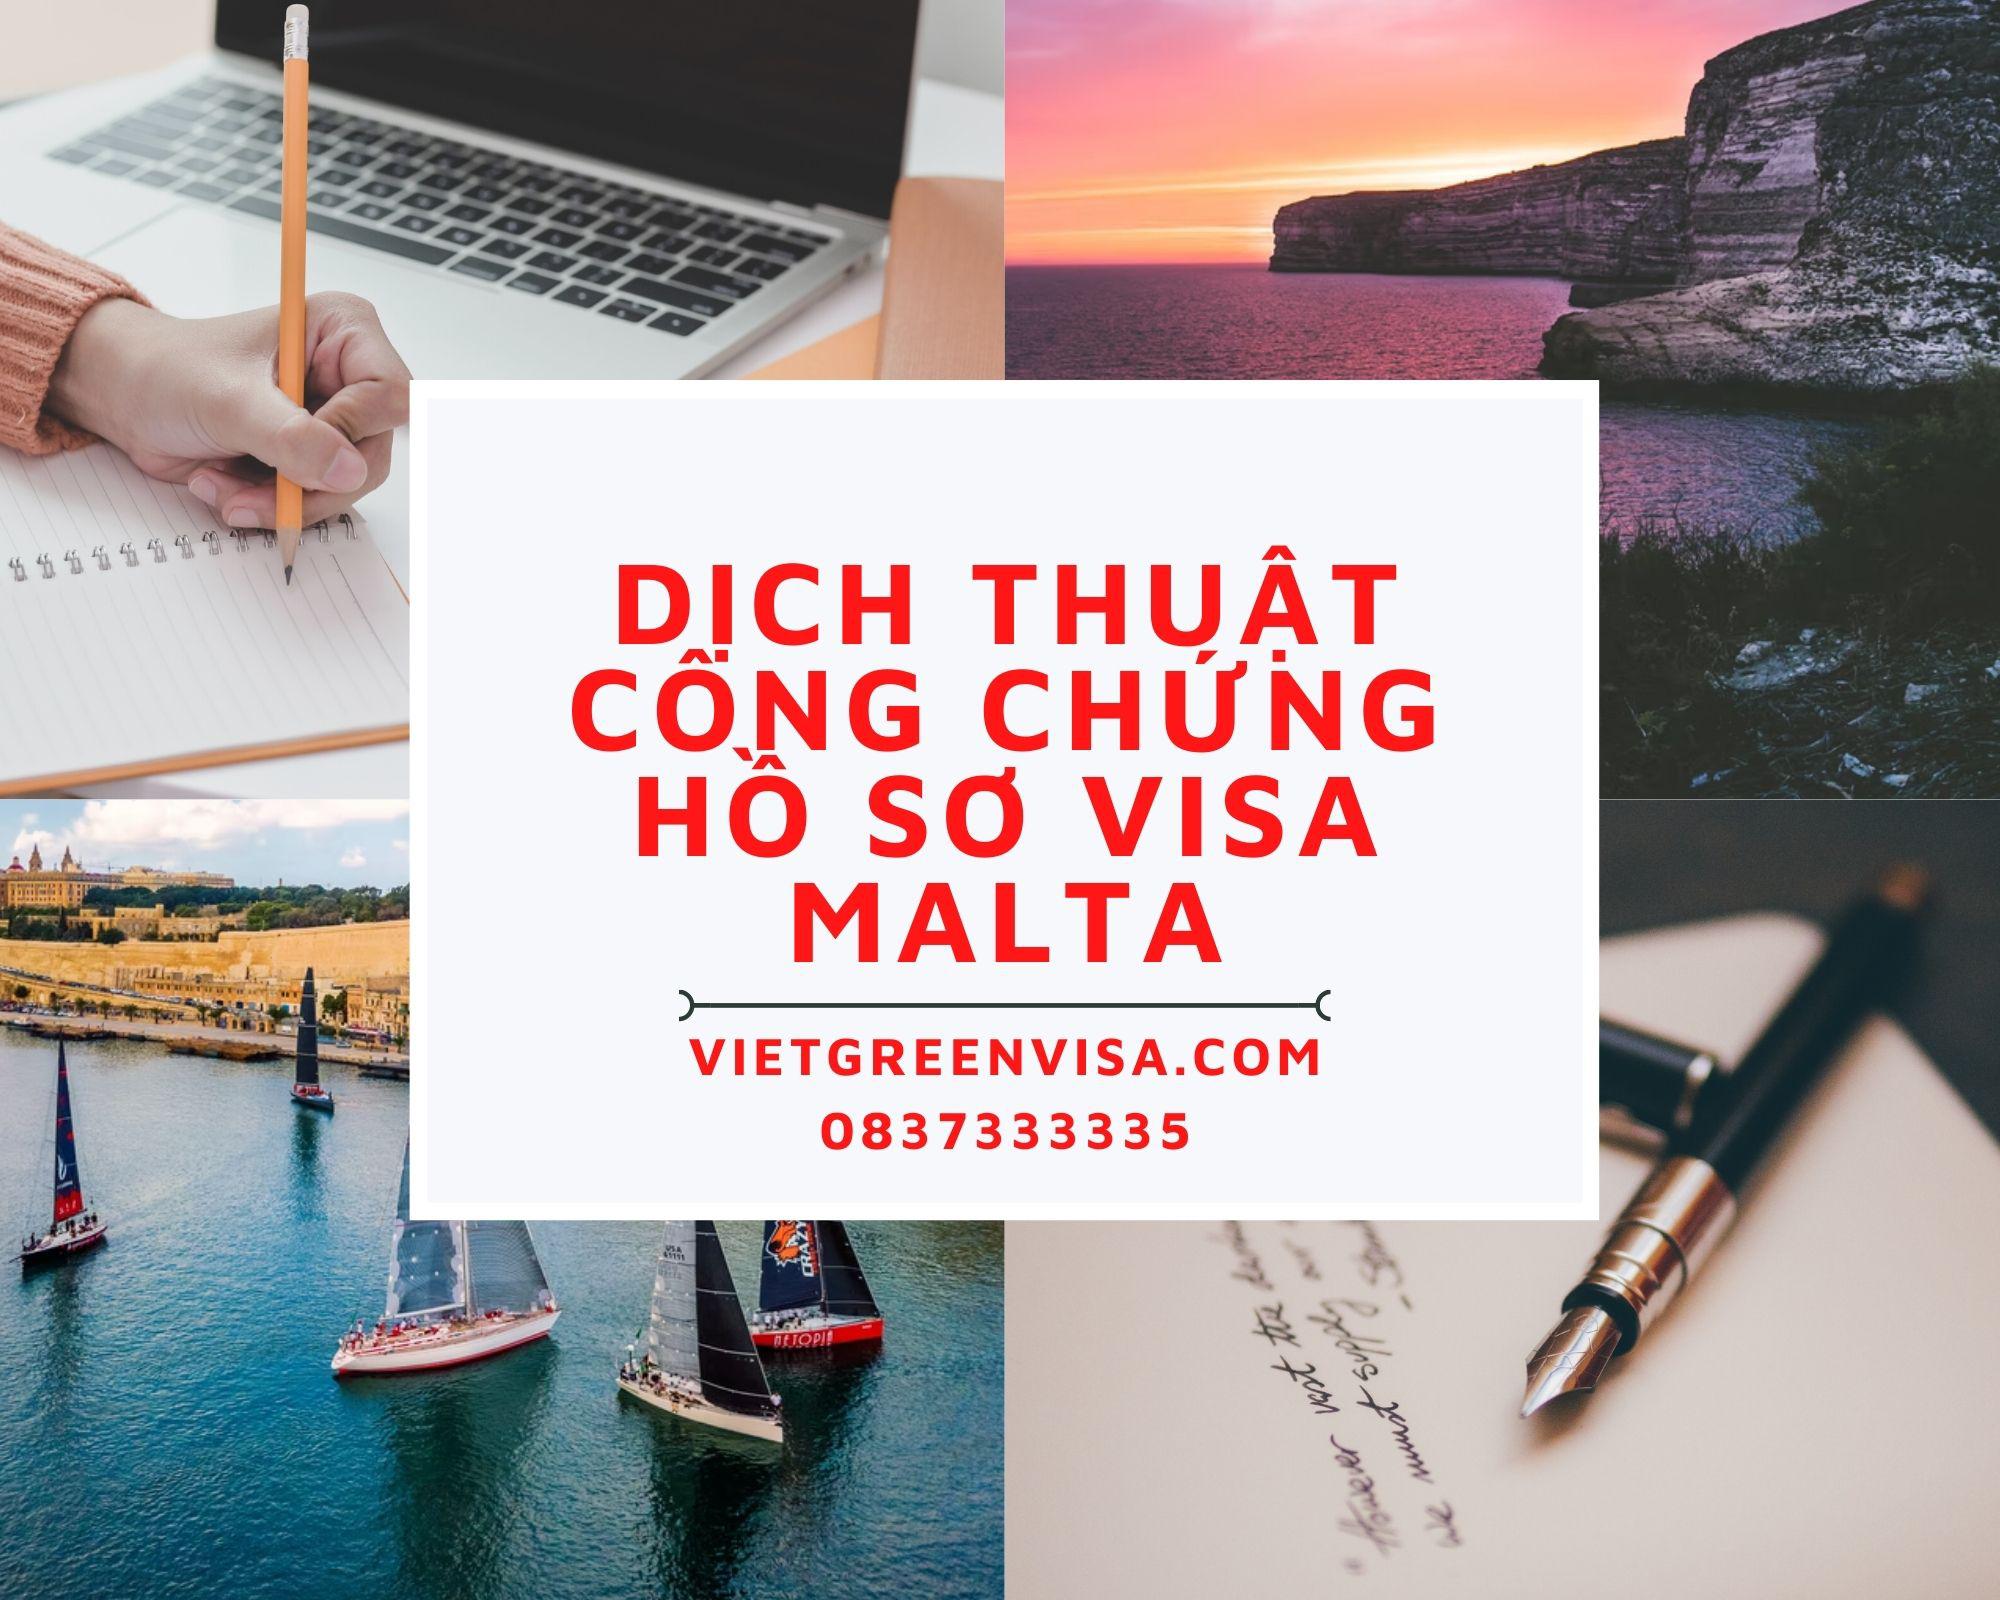 Dịch thuật công chứng hồ sơ visa du lịch, du học Malta nhanh rẻ